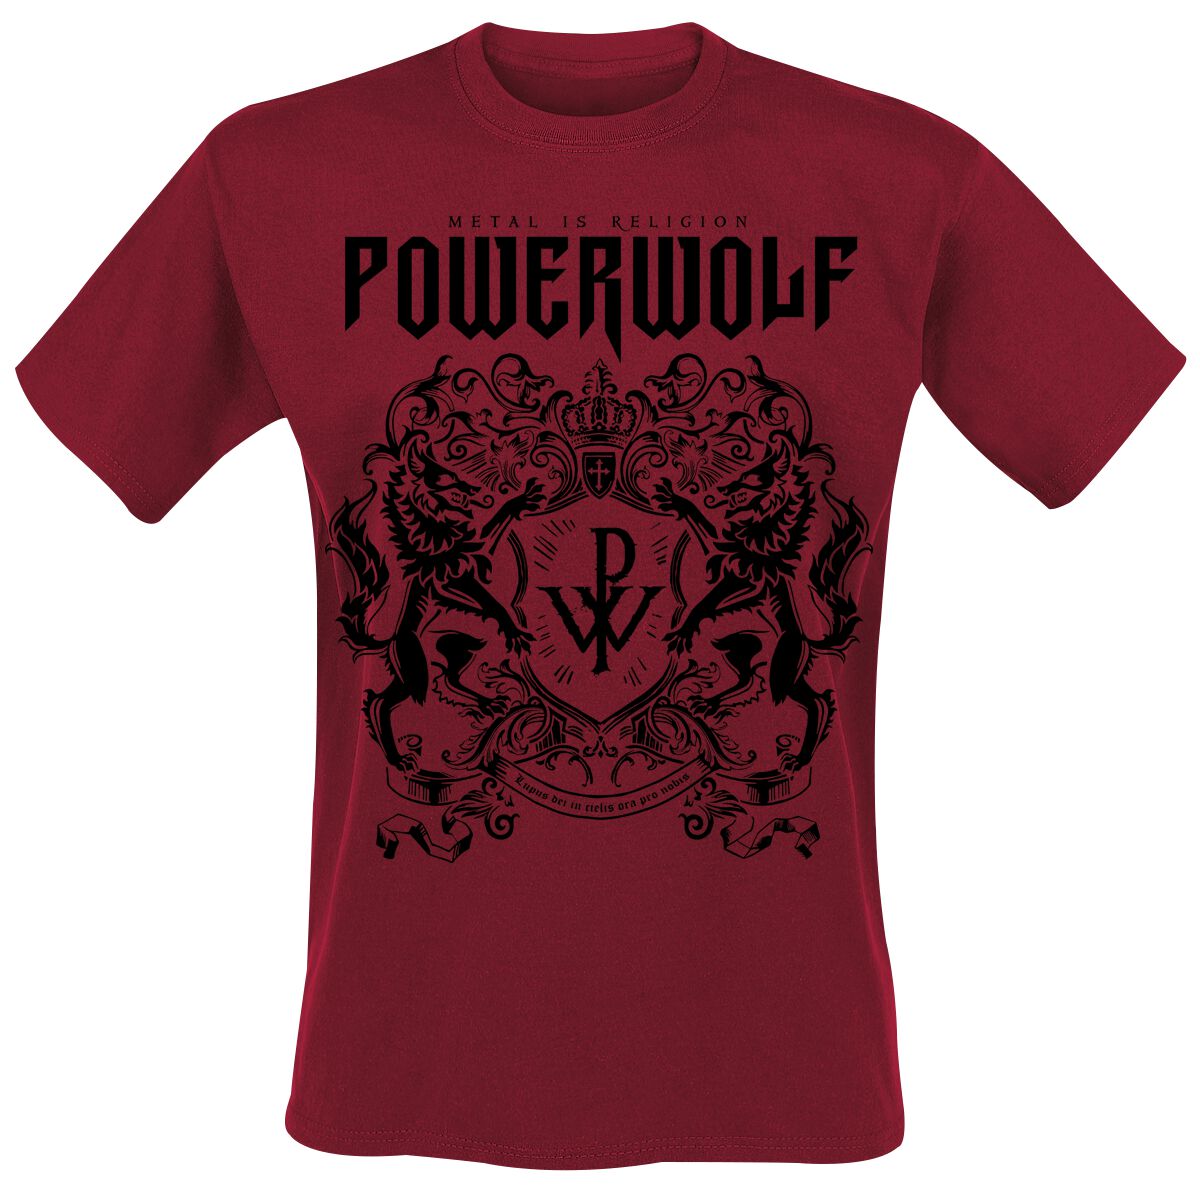 T-Shirt Manches courtes de Powerwolf - Logo (red) - S à XXL - pour Homme - rouge